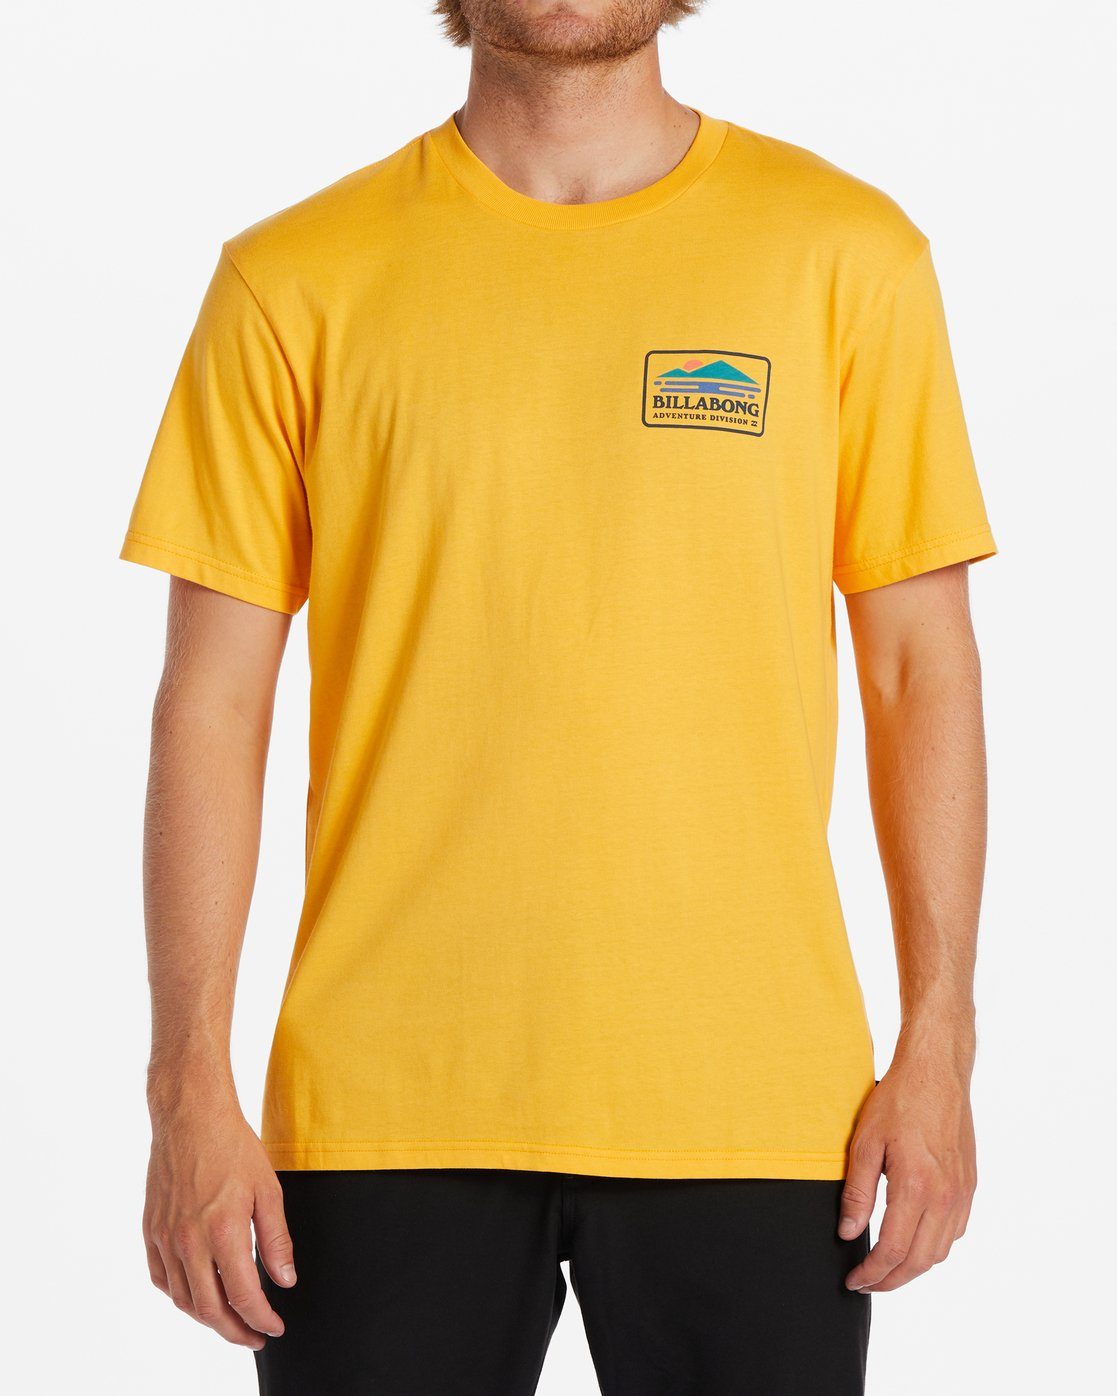 Männer Print-Shirt - für Billabong T-Shirt Range